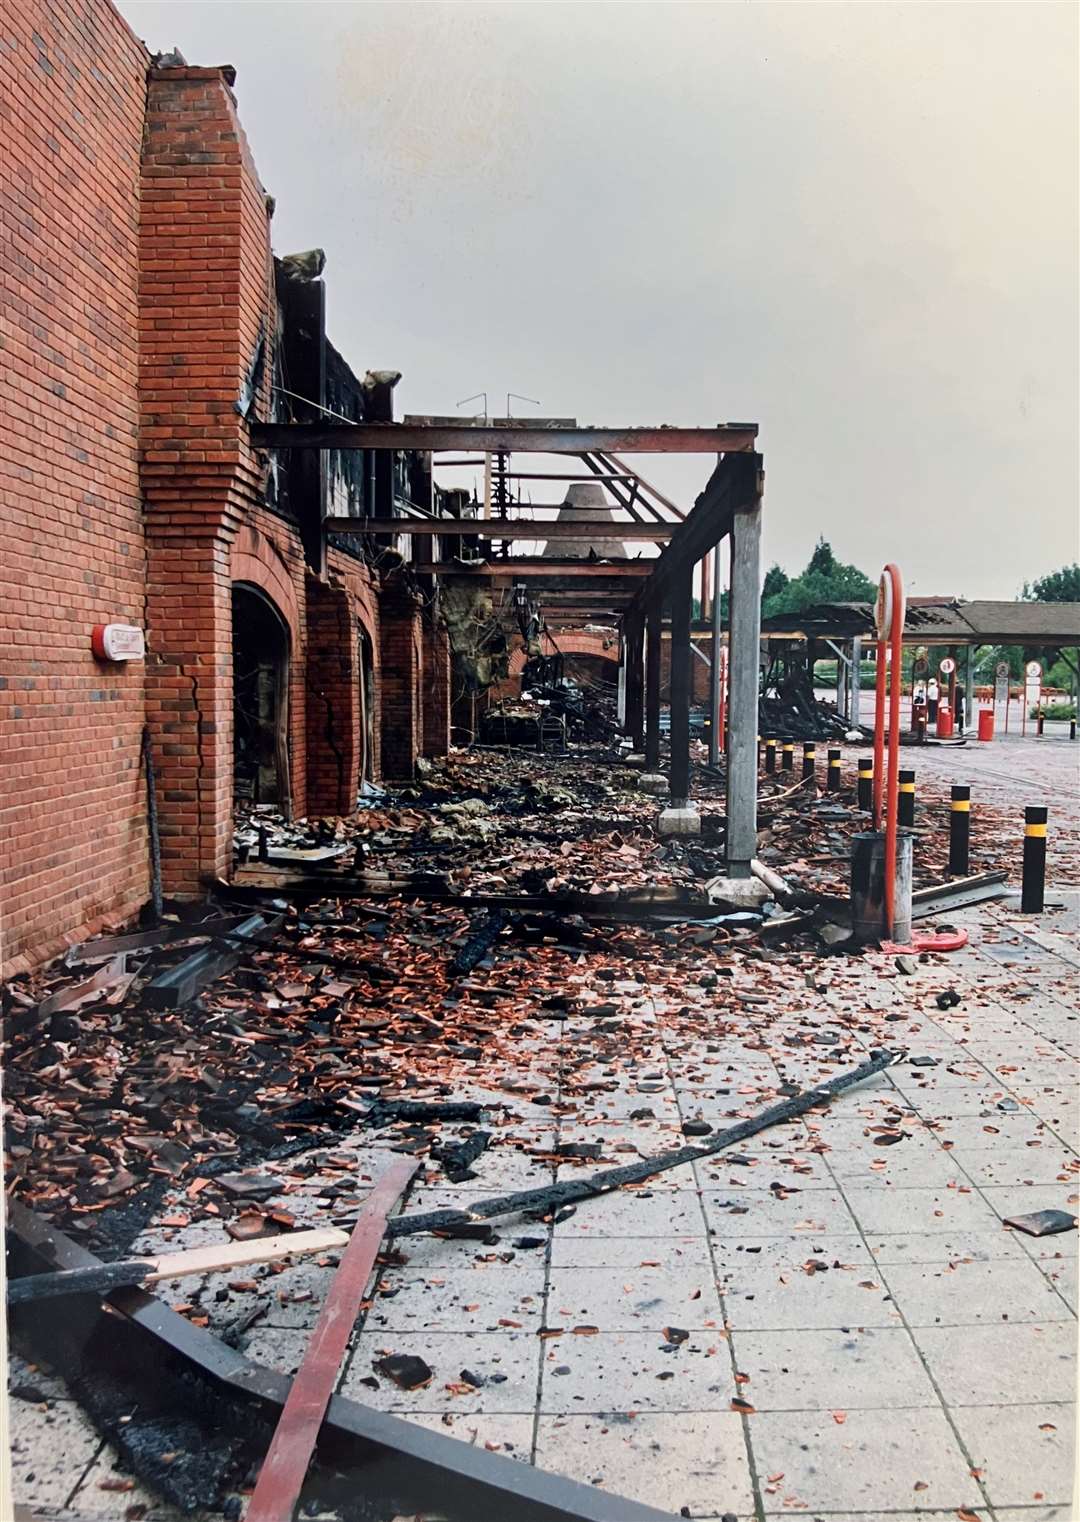 Scenes of devastation after the blaze